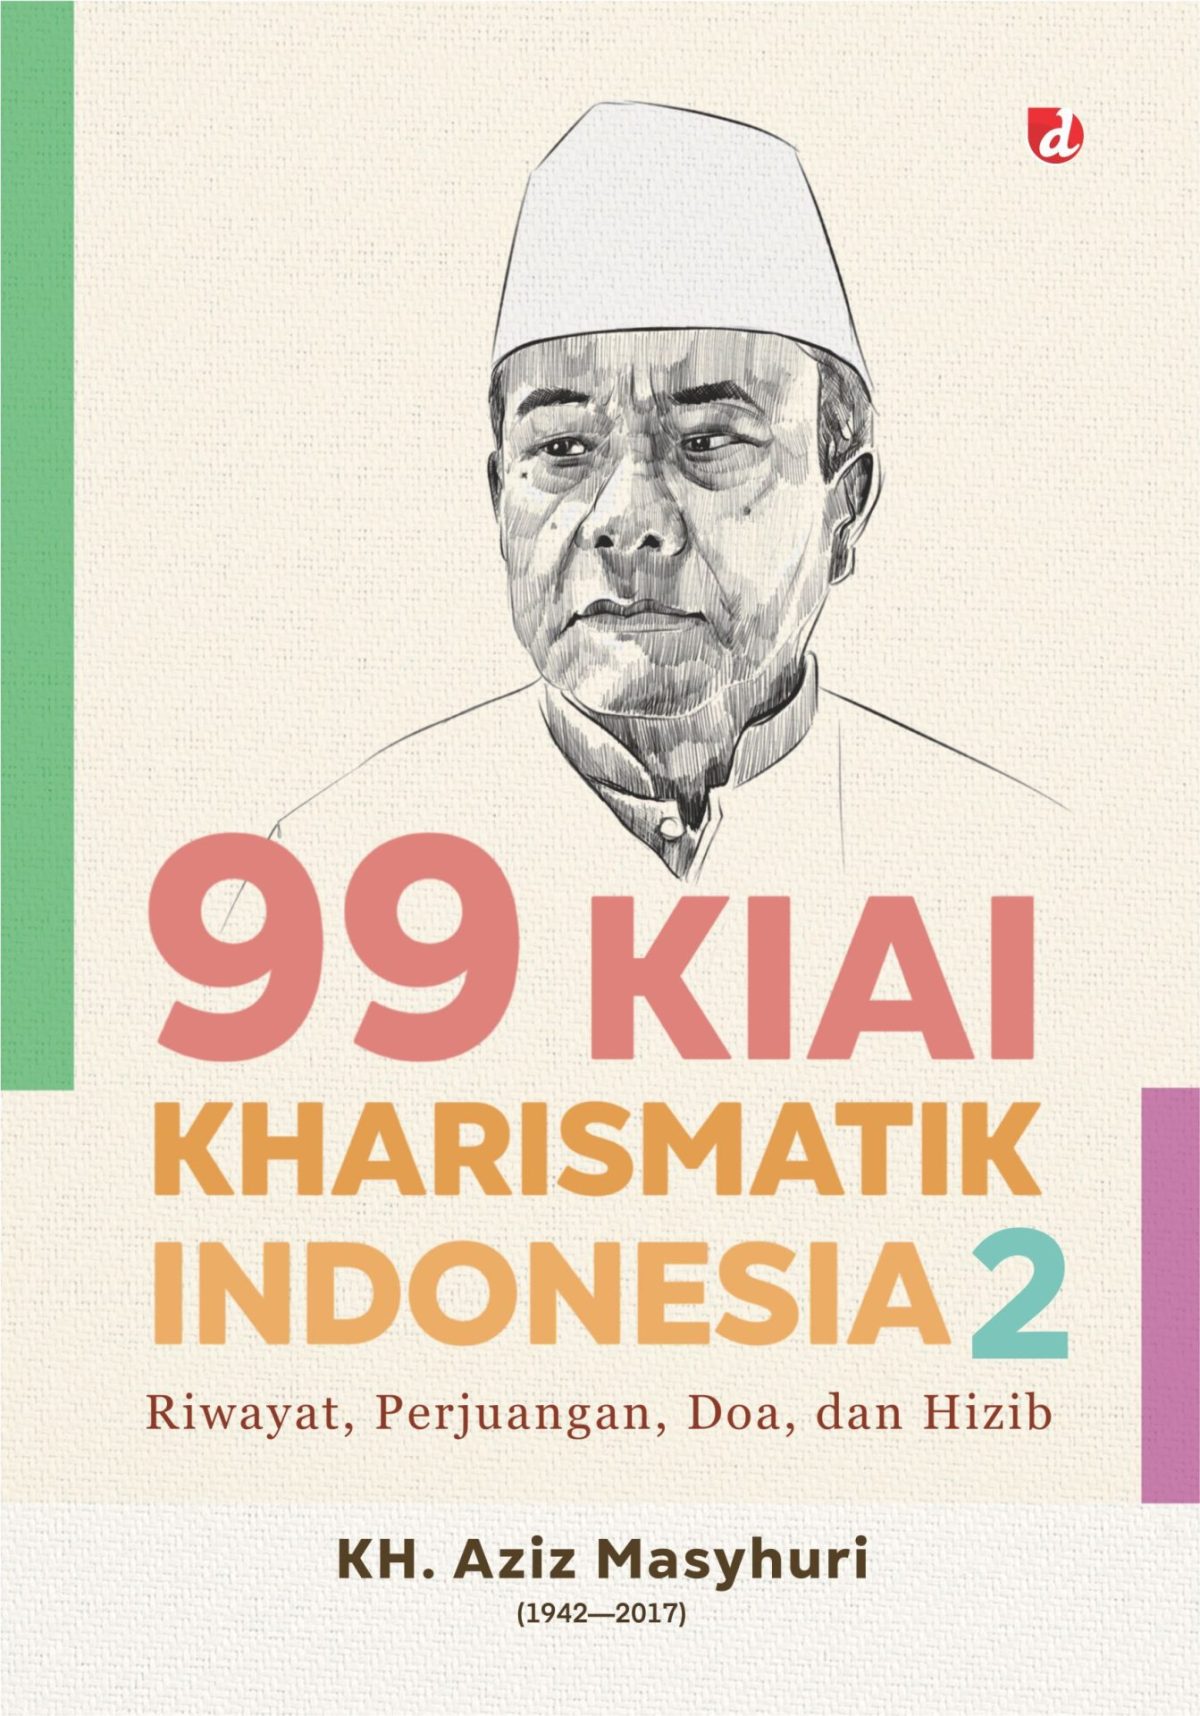 99 KIAI KARISMATIK INDONESIA JILID 2